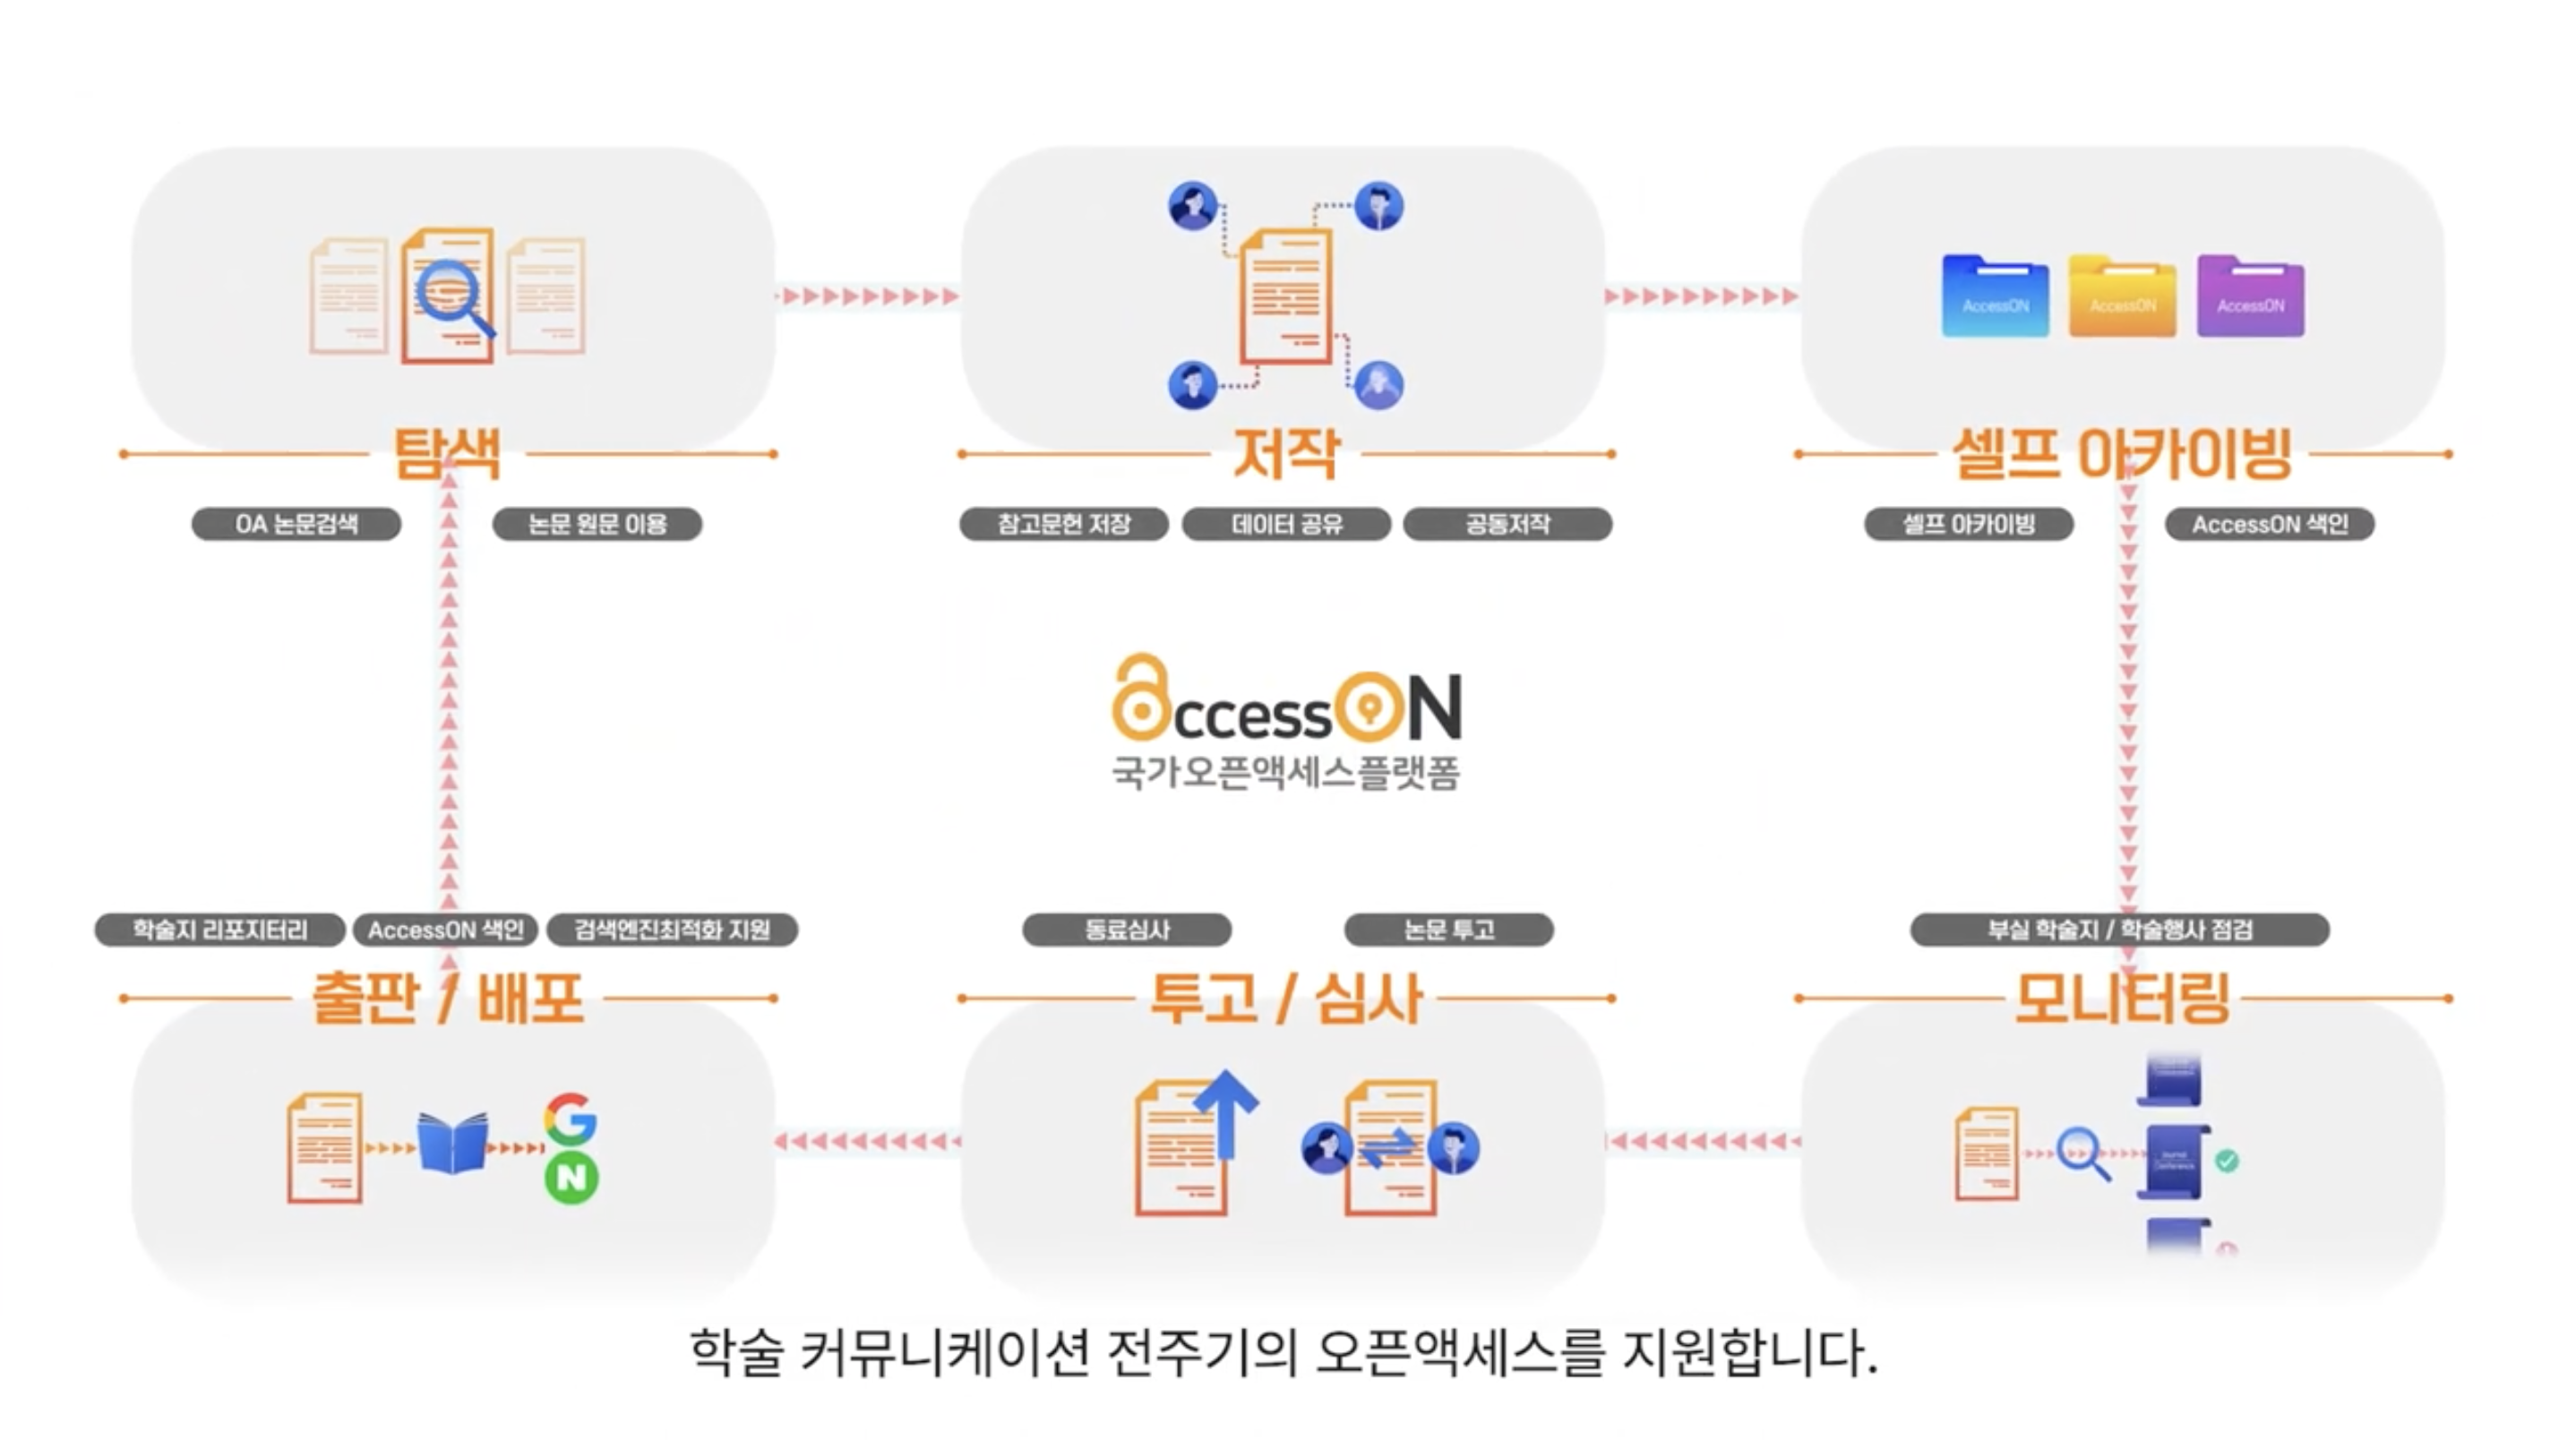 AccessON(국가오픈액세스플랫폼) 소개